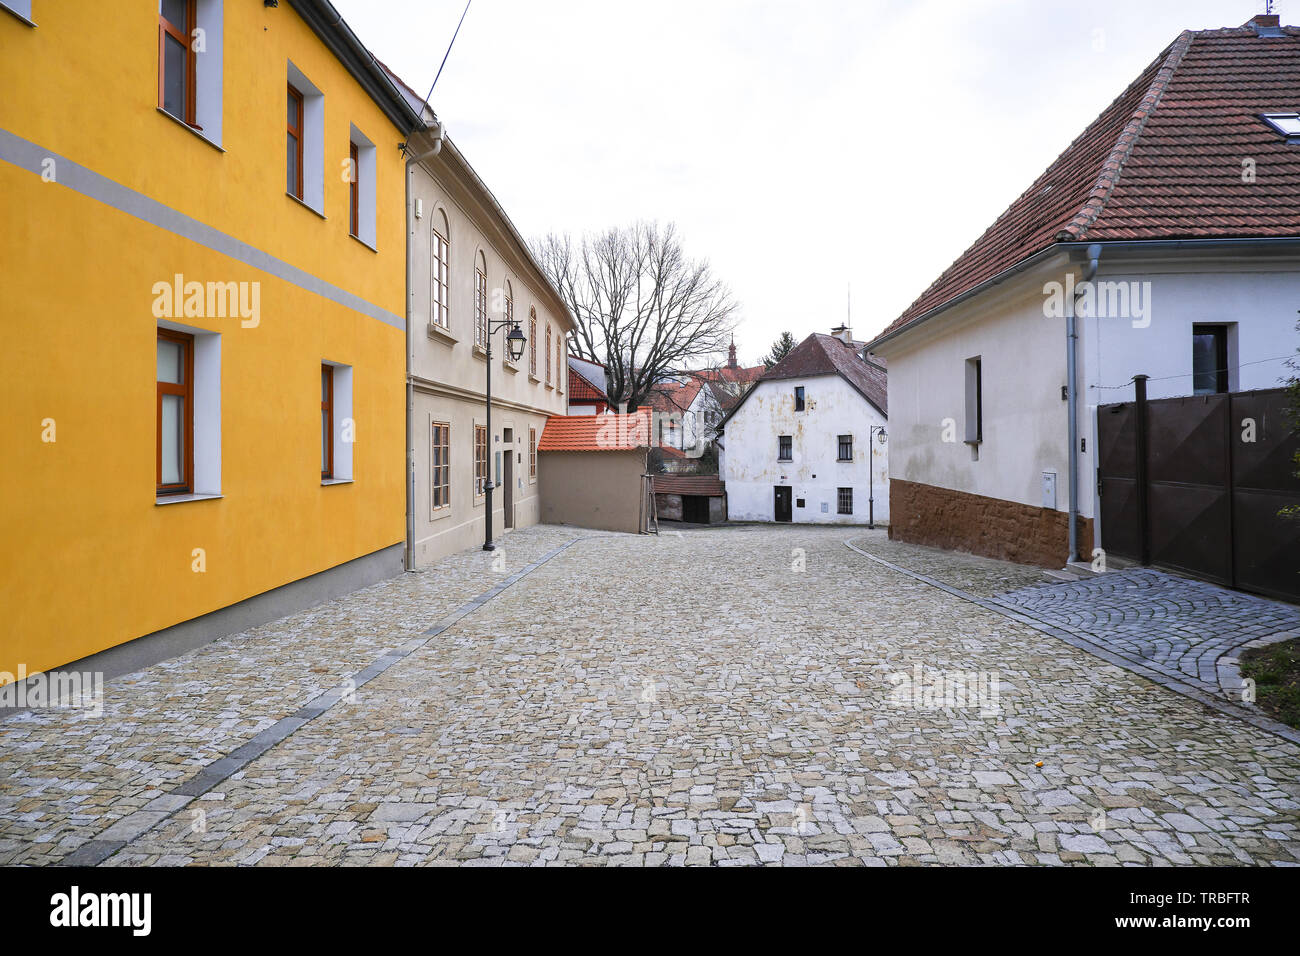 Brandys nad Labem, Tschechien, 31.12.2018, ehemalige jüdische Schule, gepflasterte Strasse in der jüdischen Gemeinschaft Stockfoto